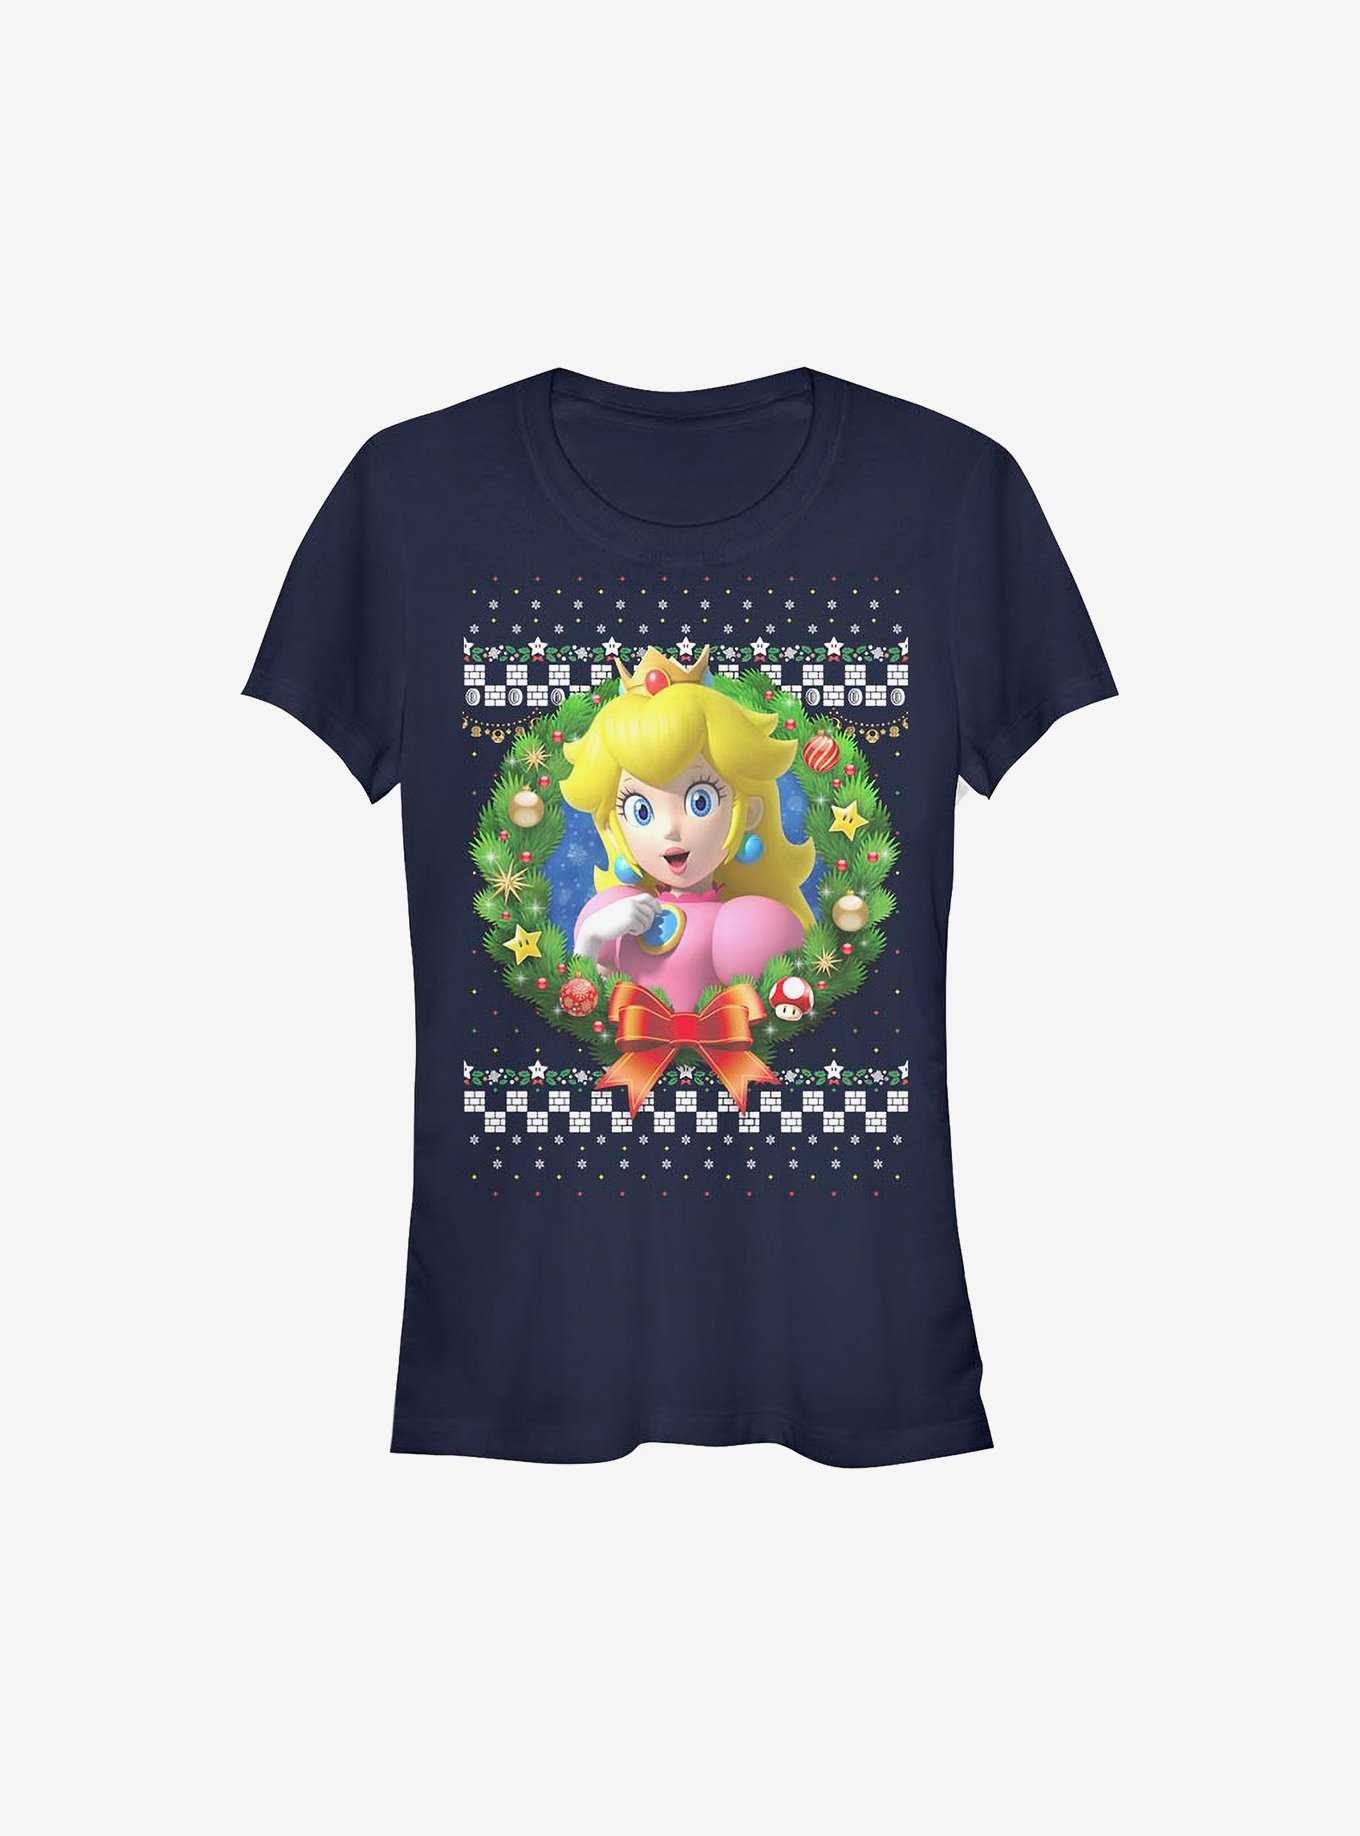 Super Mario Peach Wreath Holiday Girls T-Shirt, , hi-res